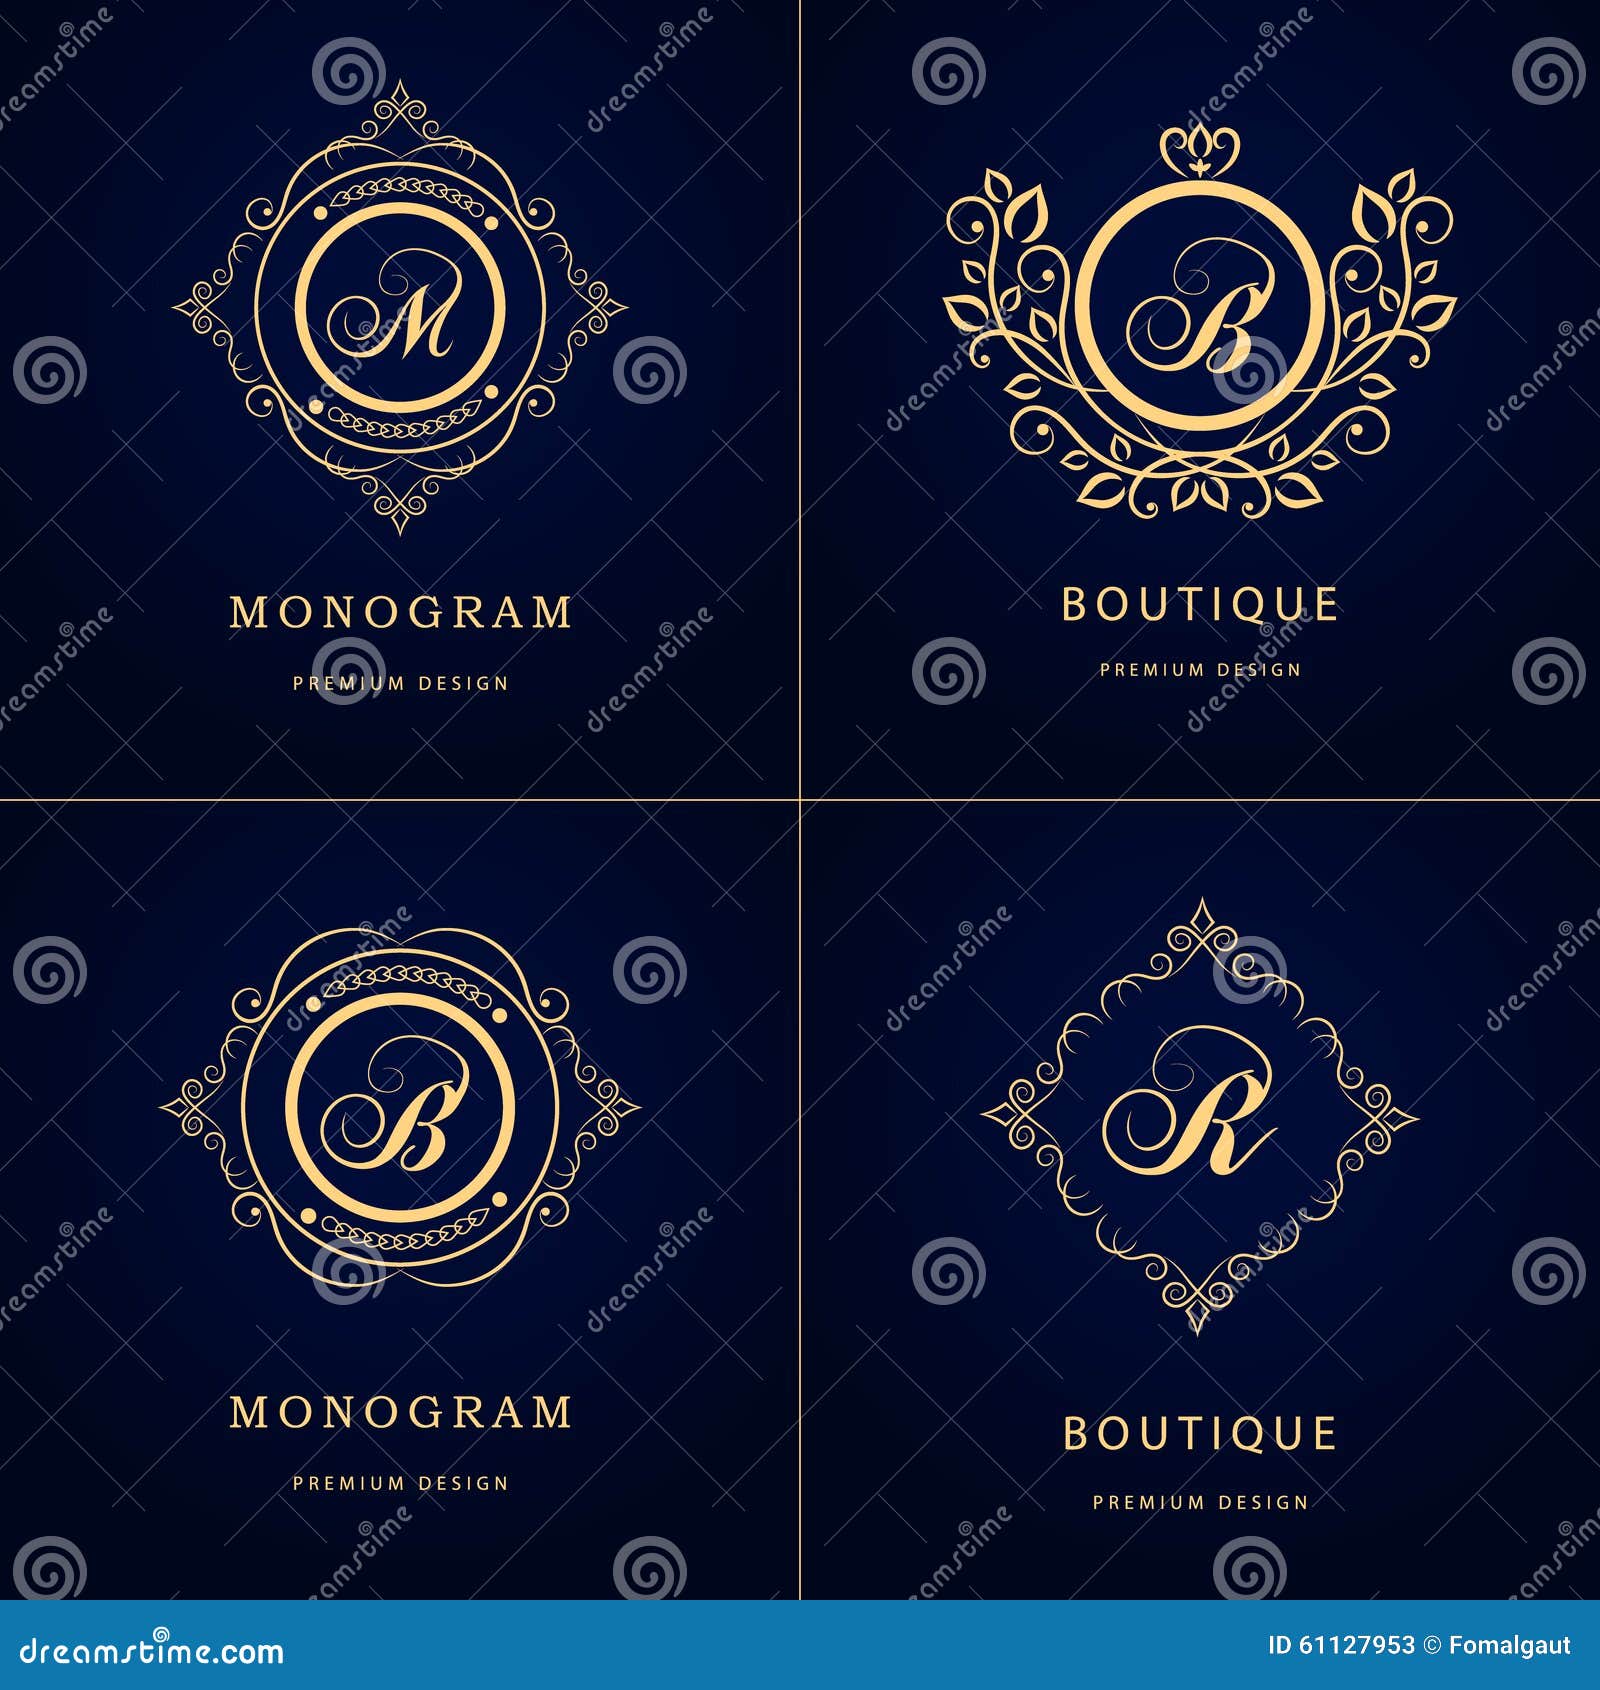 Monogram Design Elements, Graceful Template. Calligraphic Elegant Line ...